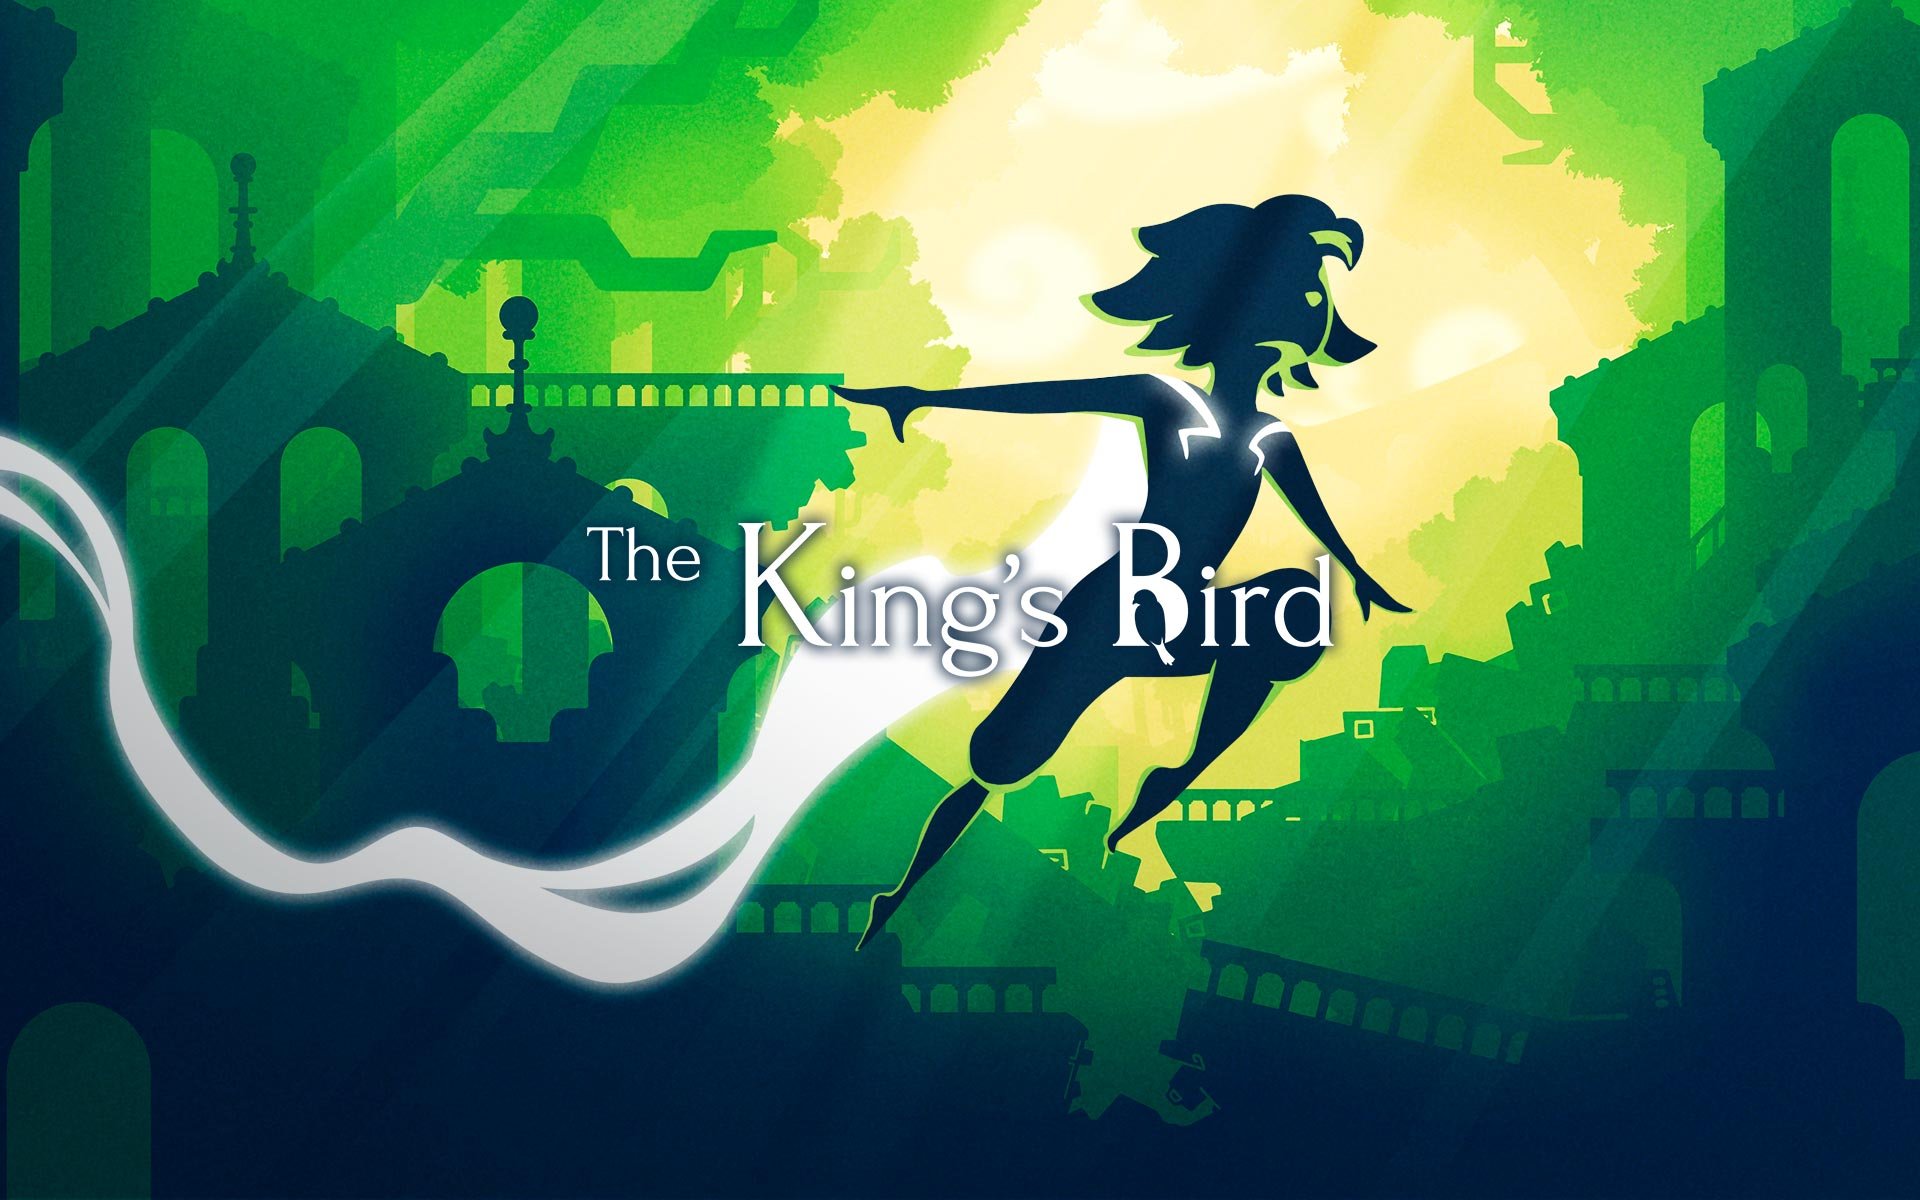 Análise: The King's Bird (PC) é um jogo de plataforma que gira em